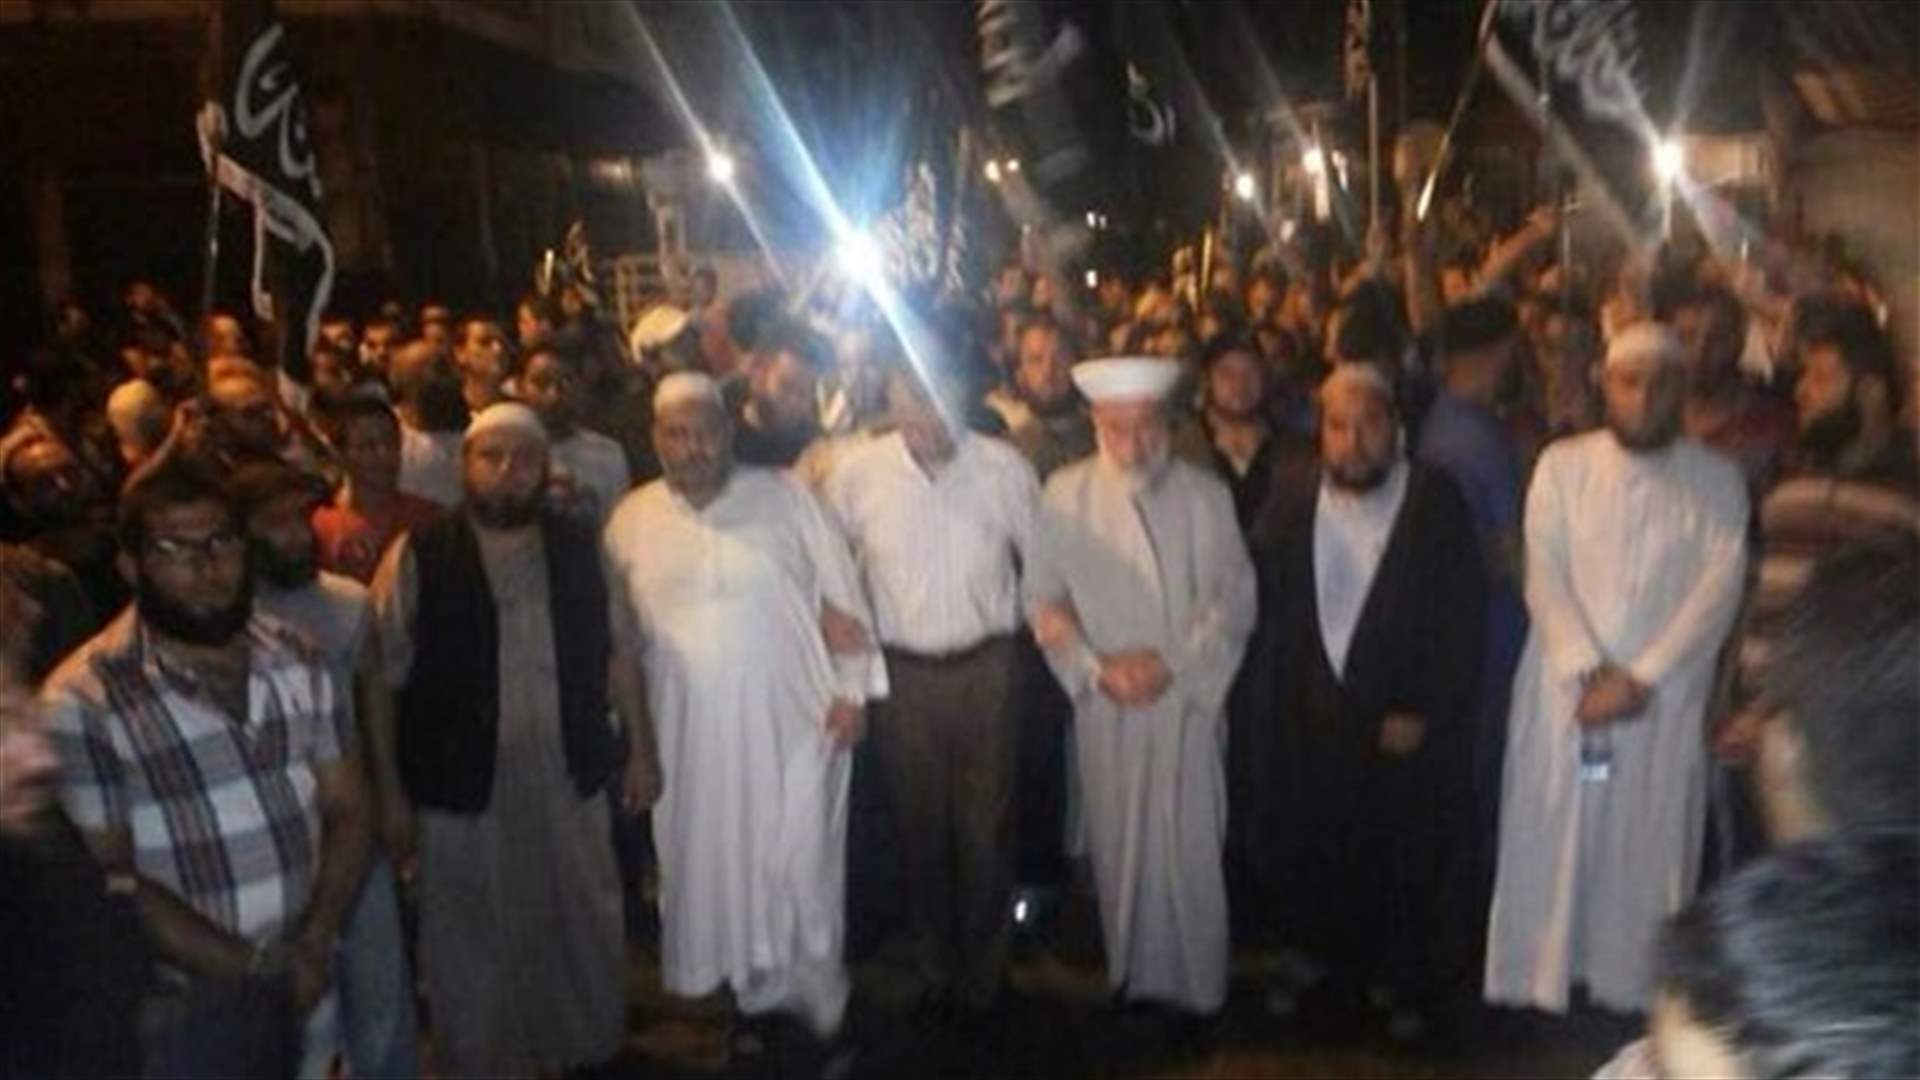 اعتصام أمام مسجد حربا للمطالبة بالافراج عن موقوفين